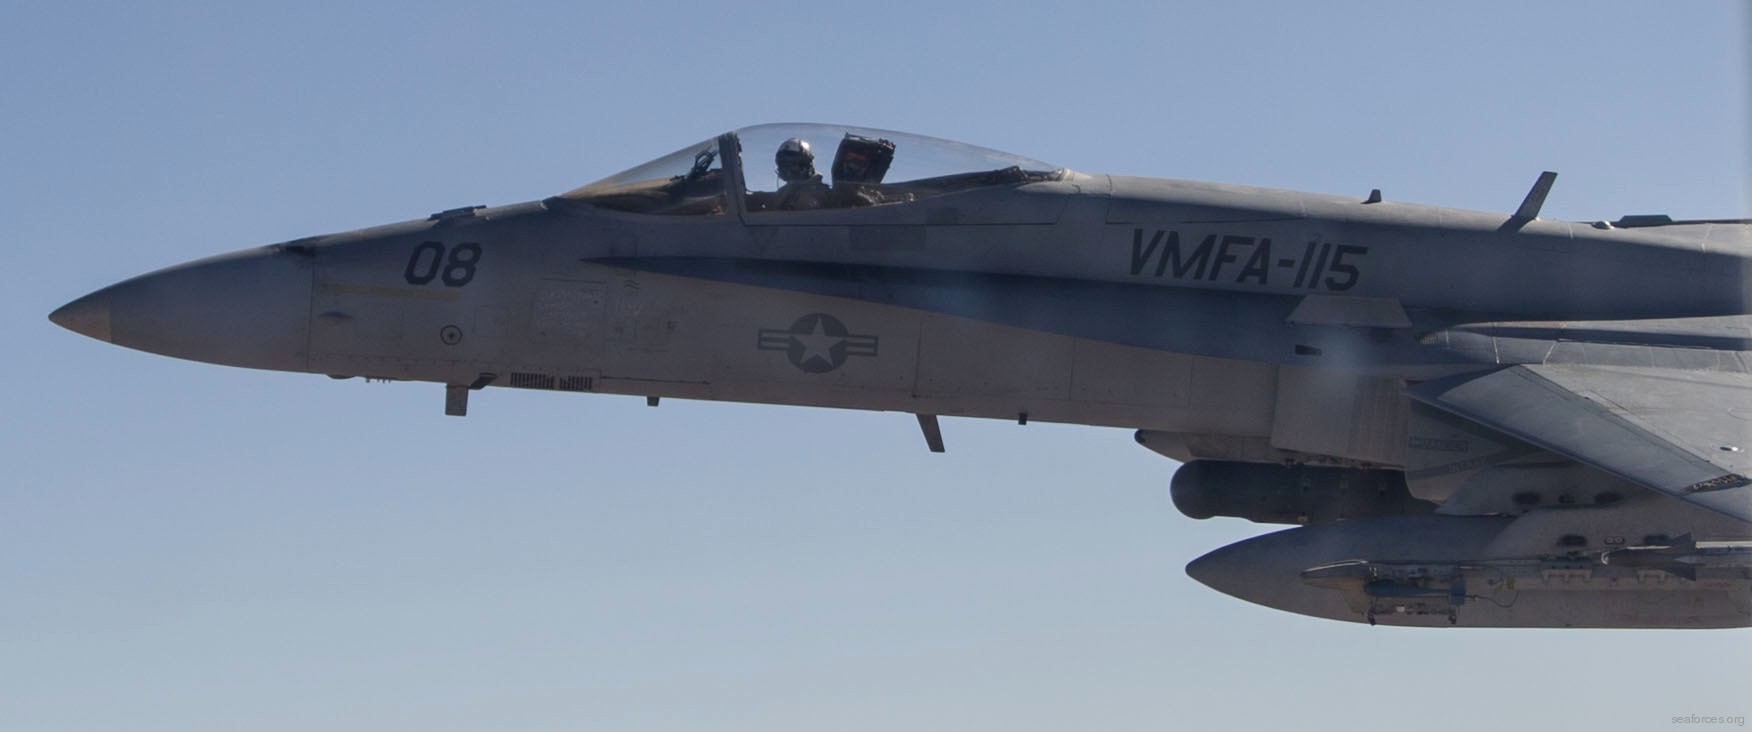 vmfa-115 silver eagles marine fighter attack squadron f/a-18a+ hornet 94